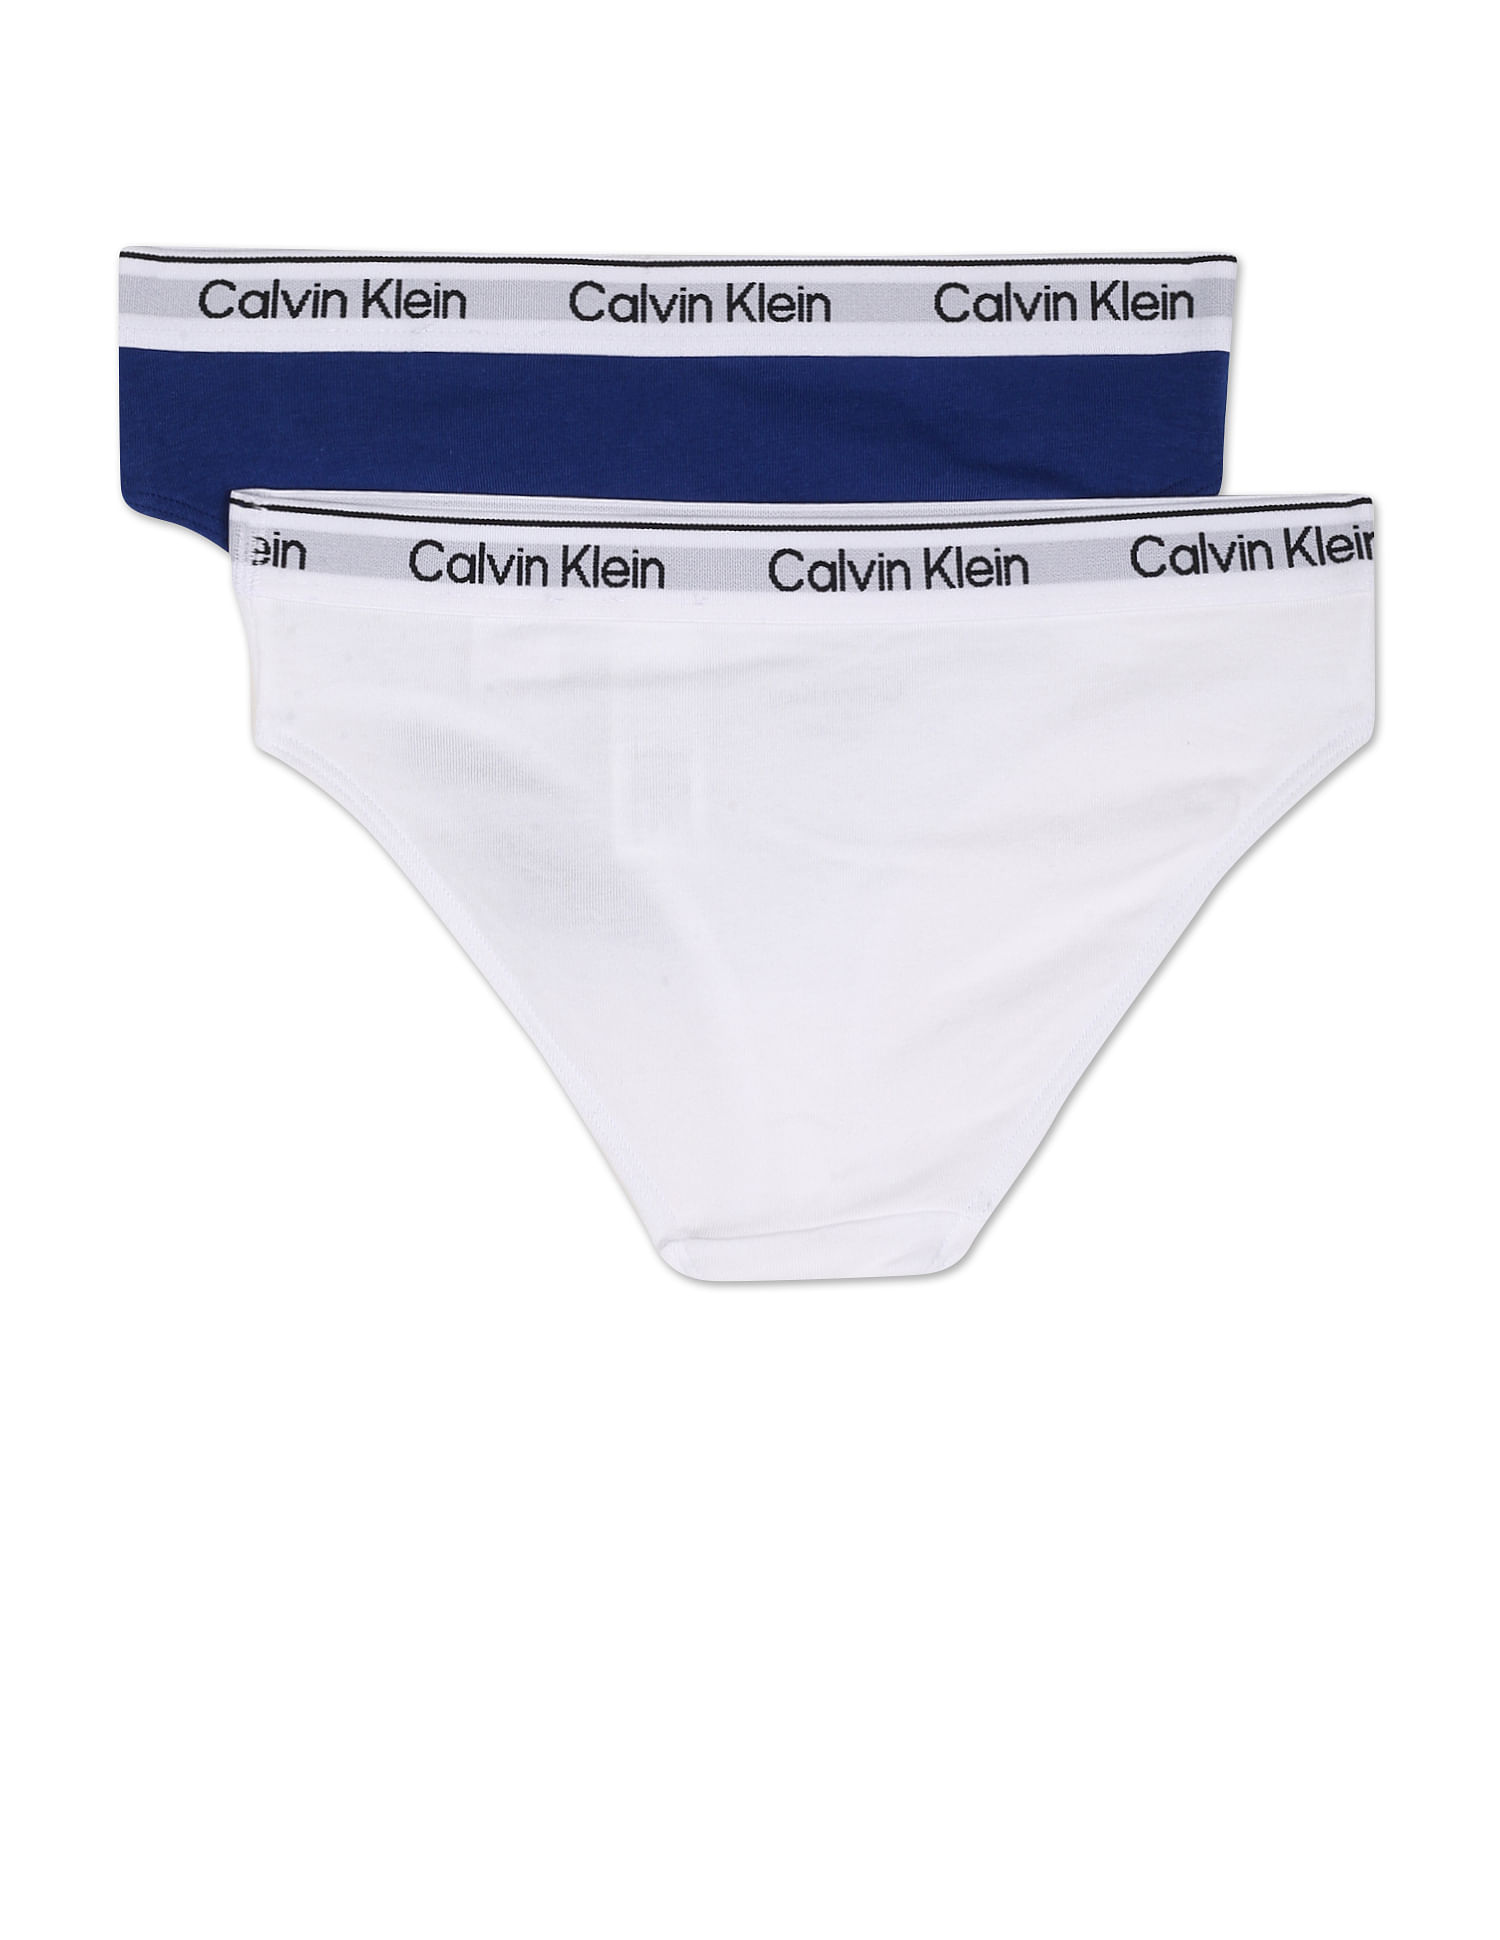 Buy Calvin Klein Underwear Branded Waist Bikini Panties - Pack Of